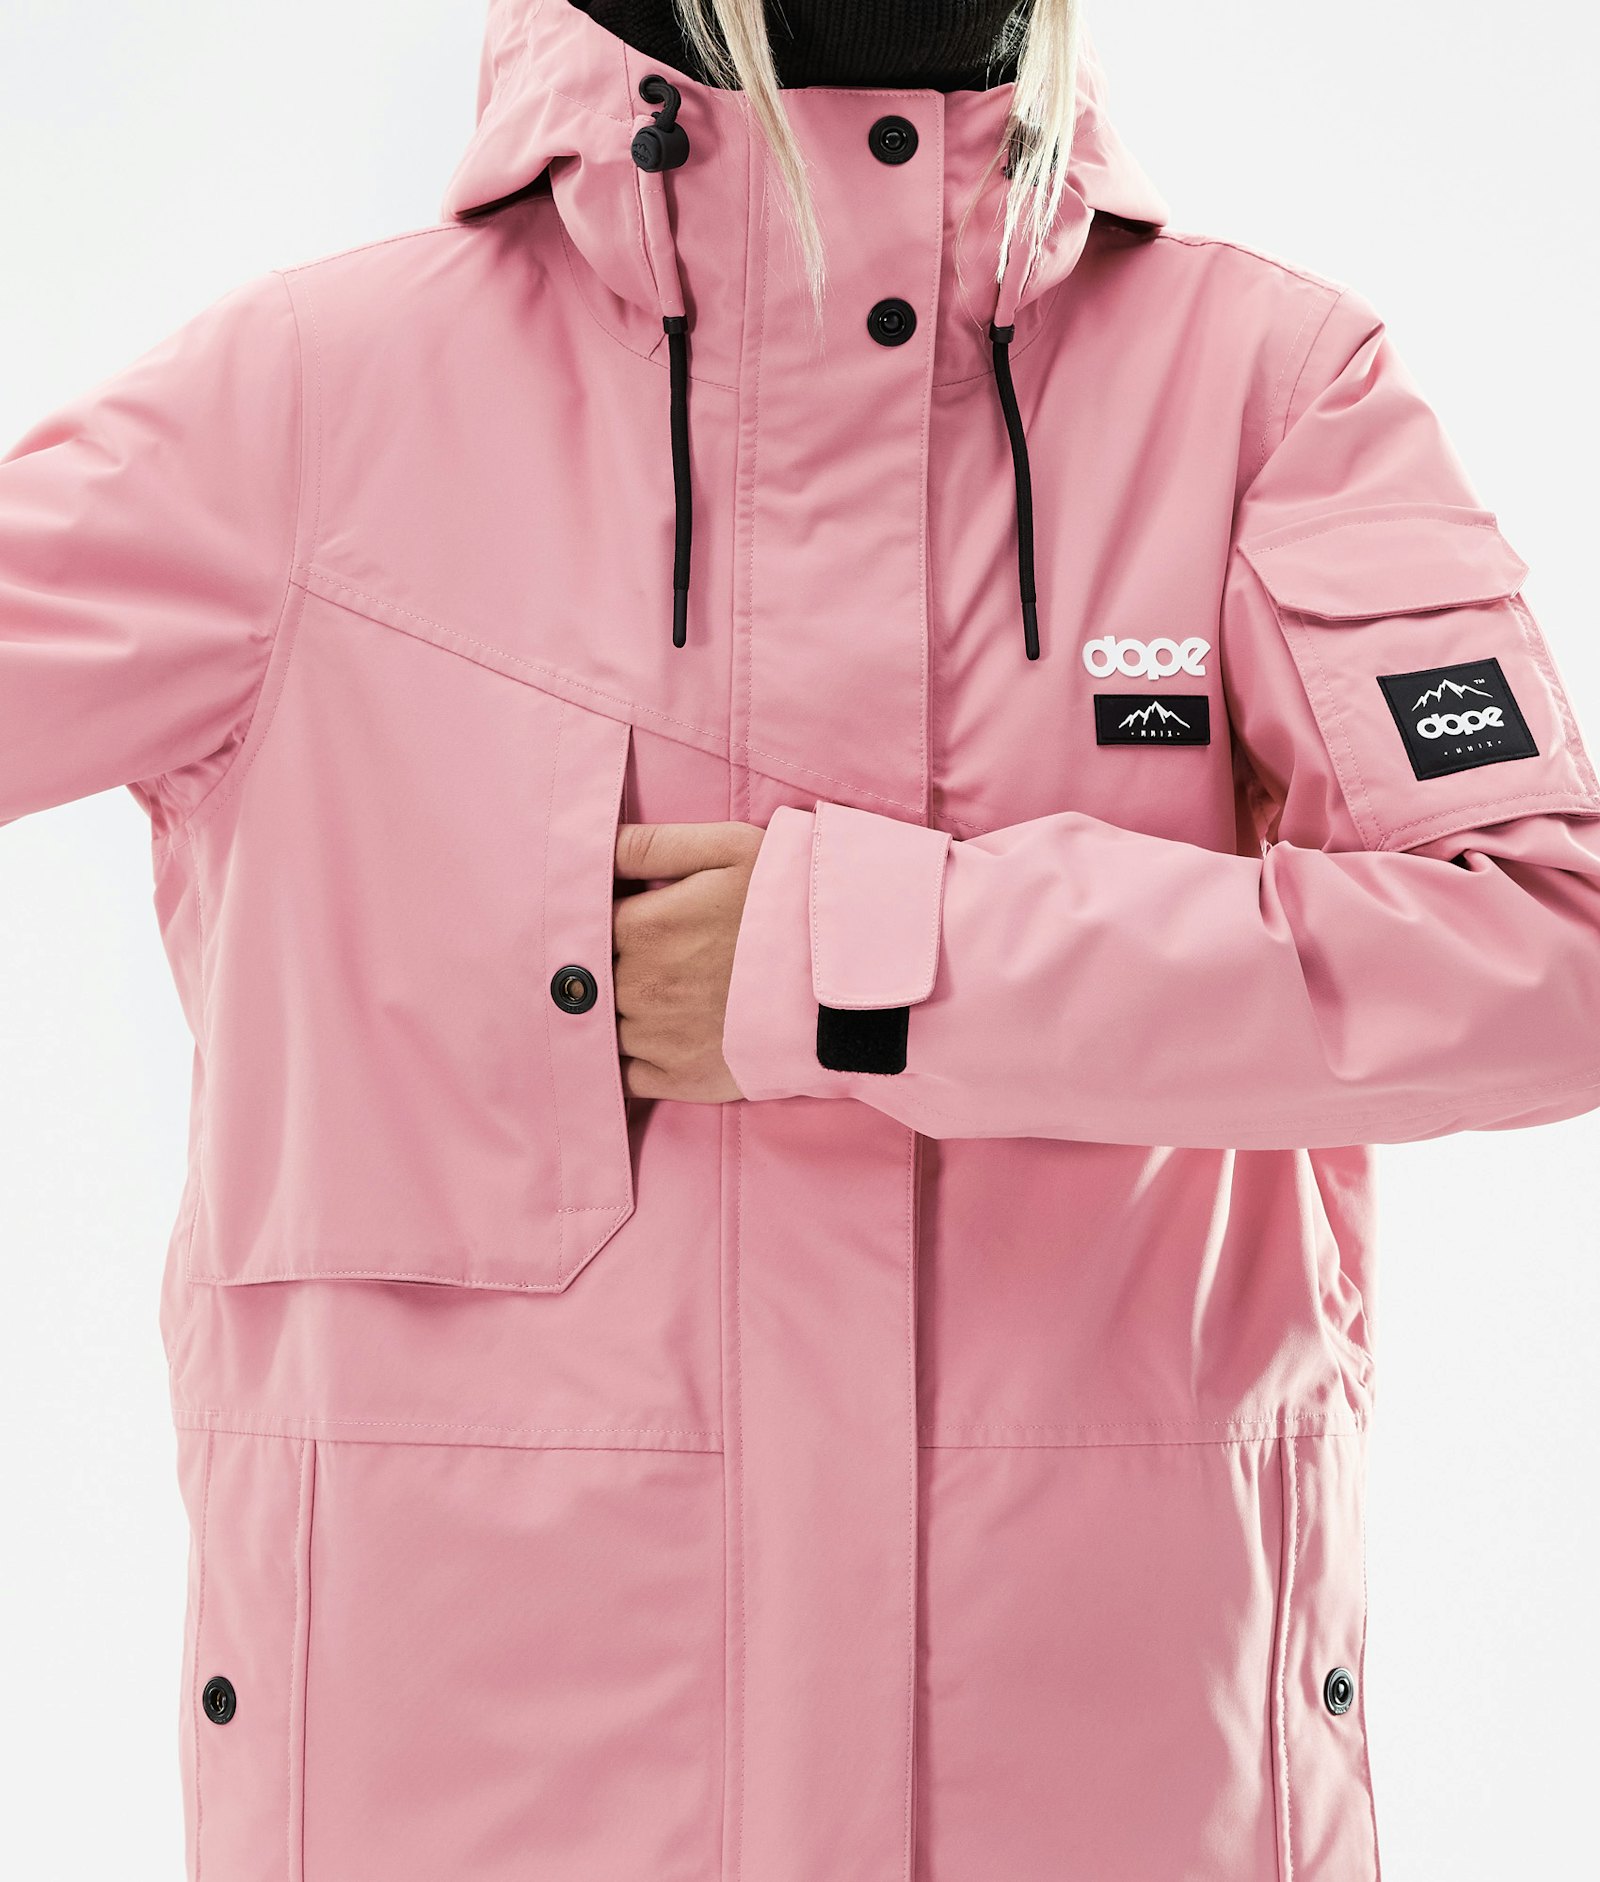 Adept W 2021 スキージャケット レディース Pink